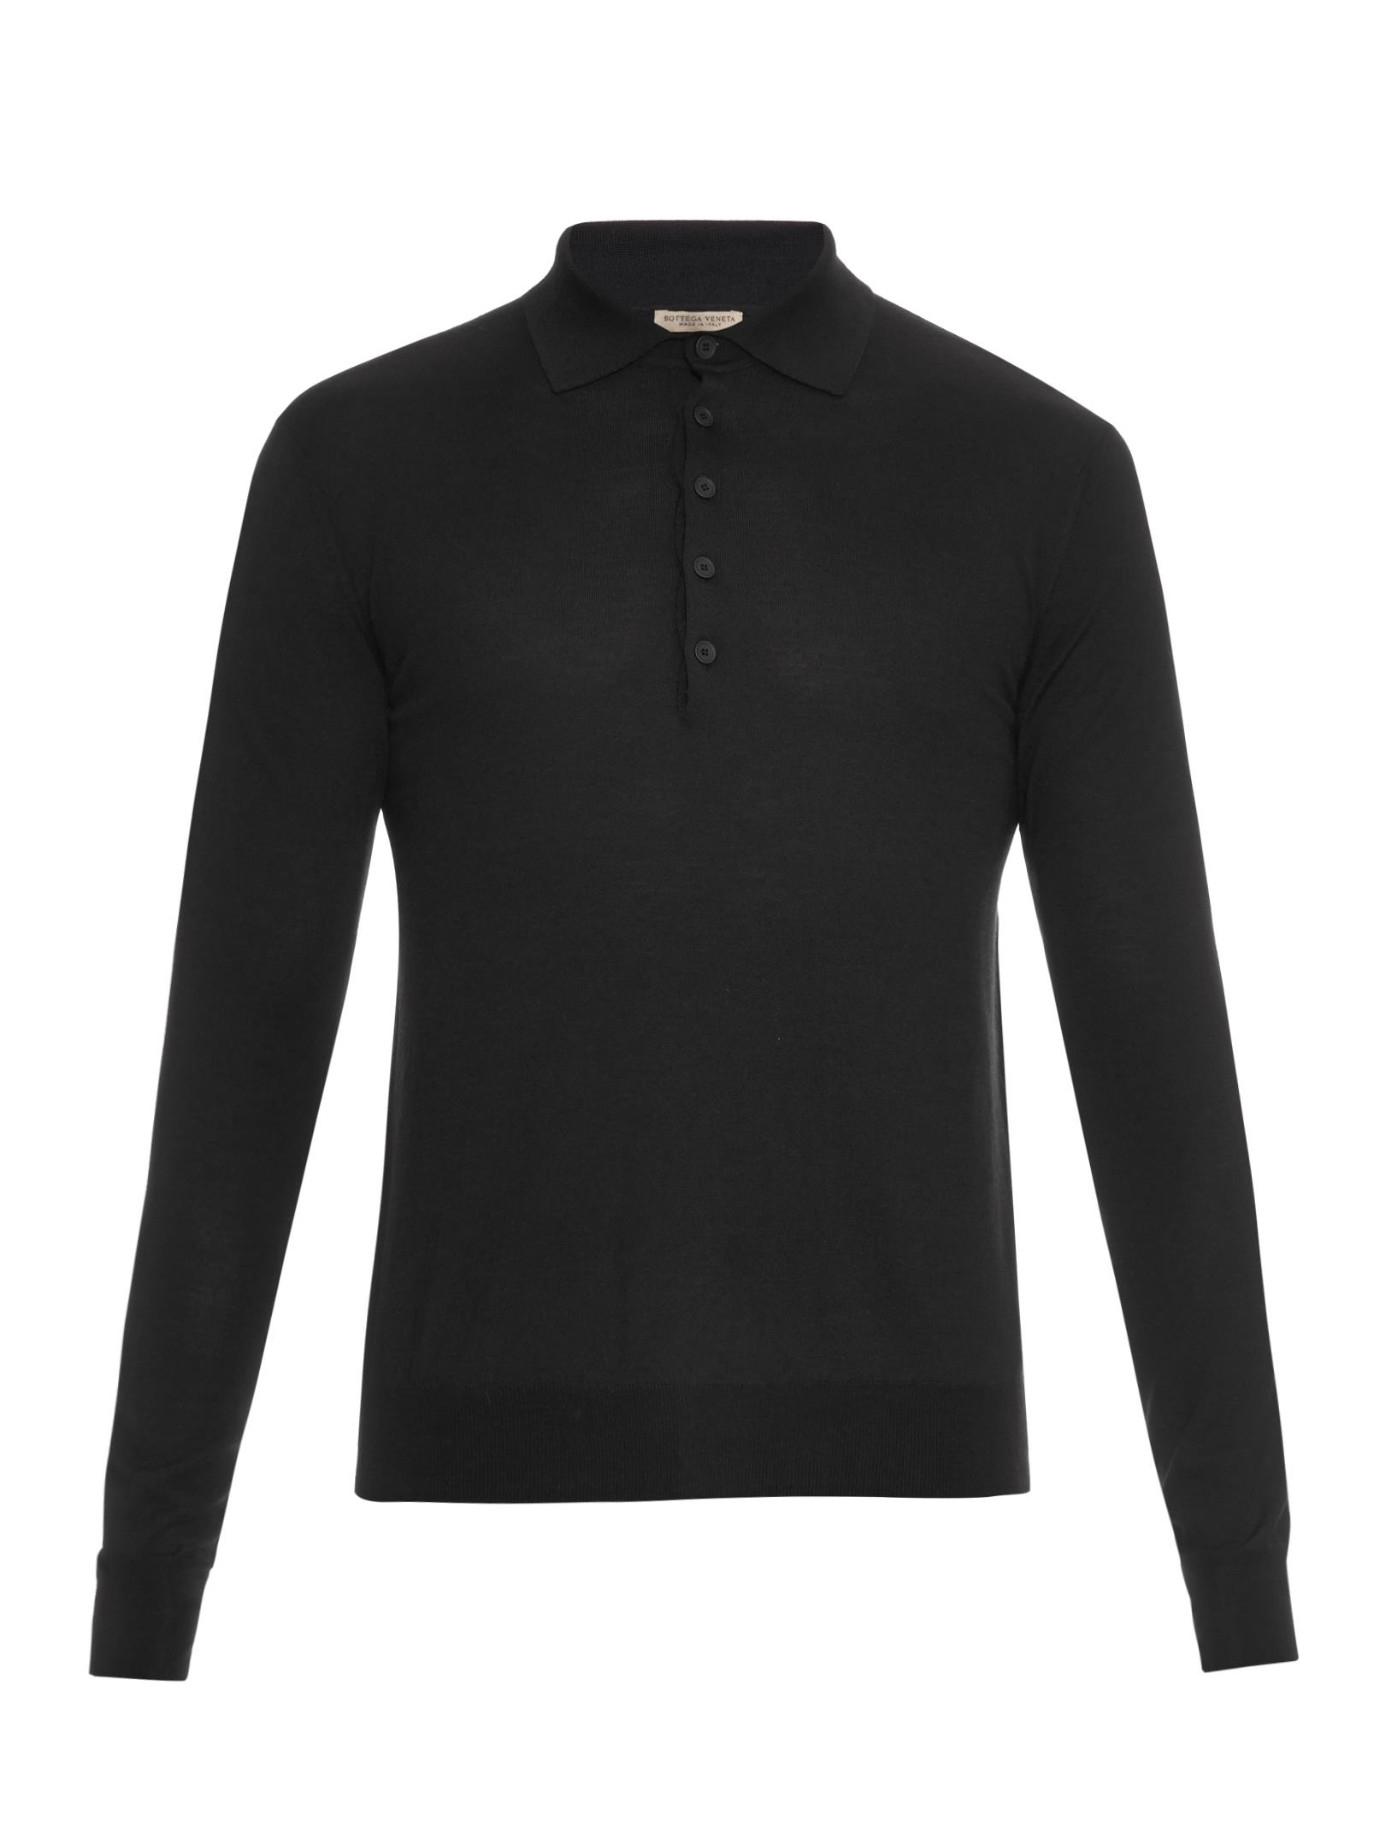 Bottega veneta Long-Sleeved Merino-Wool Polo Shirt in Black for Men | Lyst